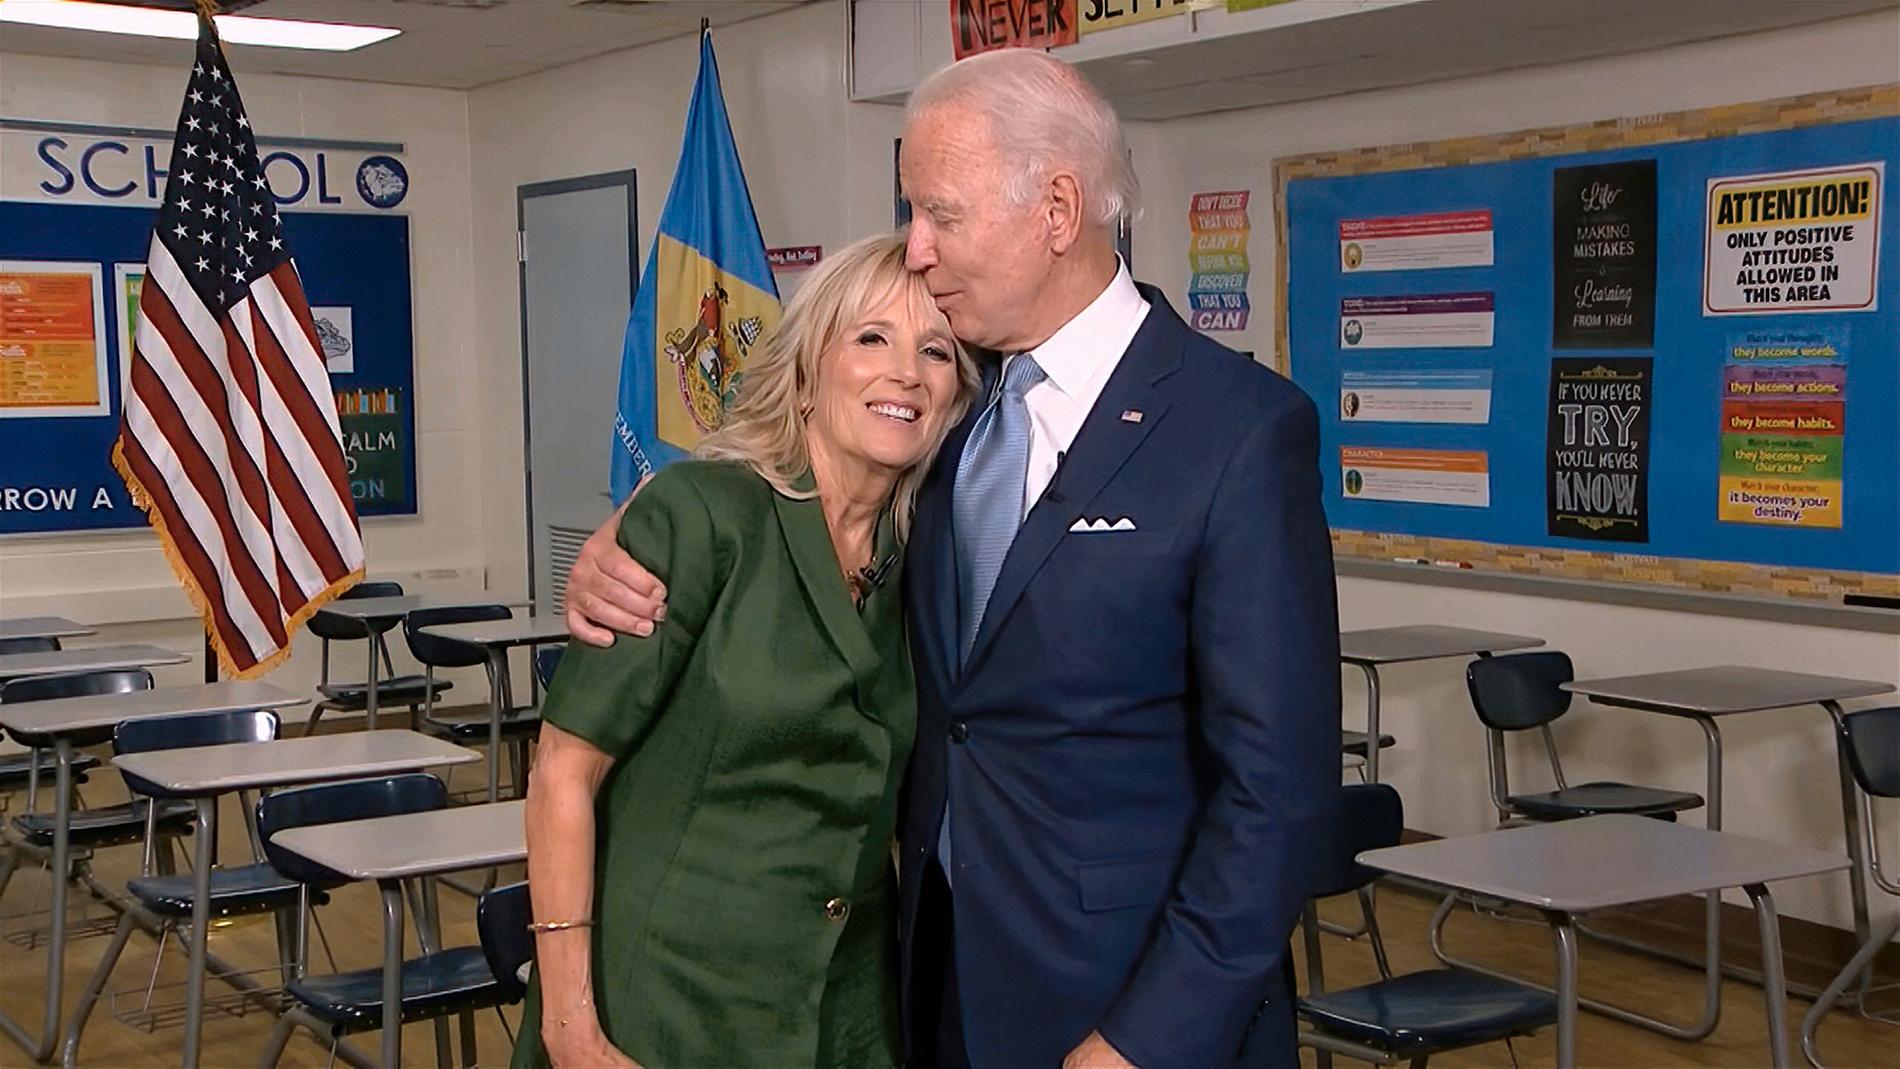 Jill och Joe Biden.